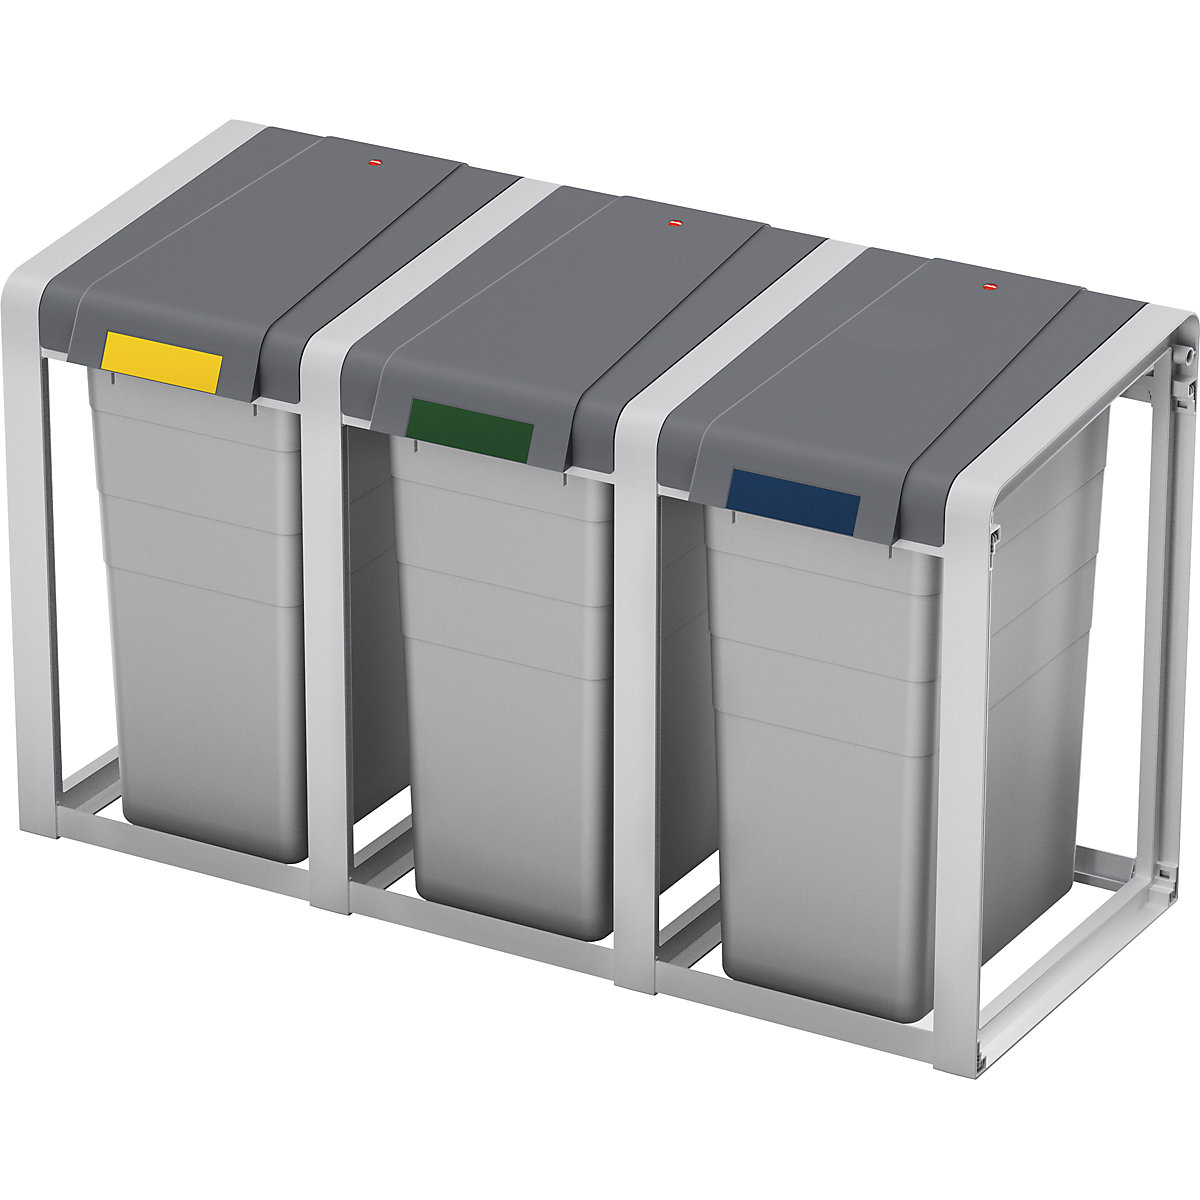 Sistema modular de recipientes para separar materiales ProfiLine, ecológico y flexible – Hailo (Imagen del producto 2)-1